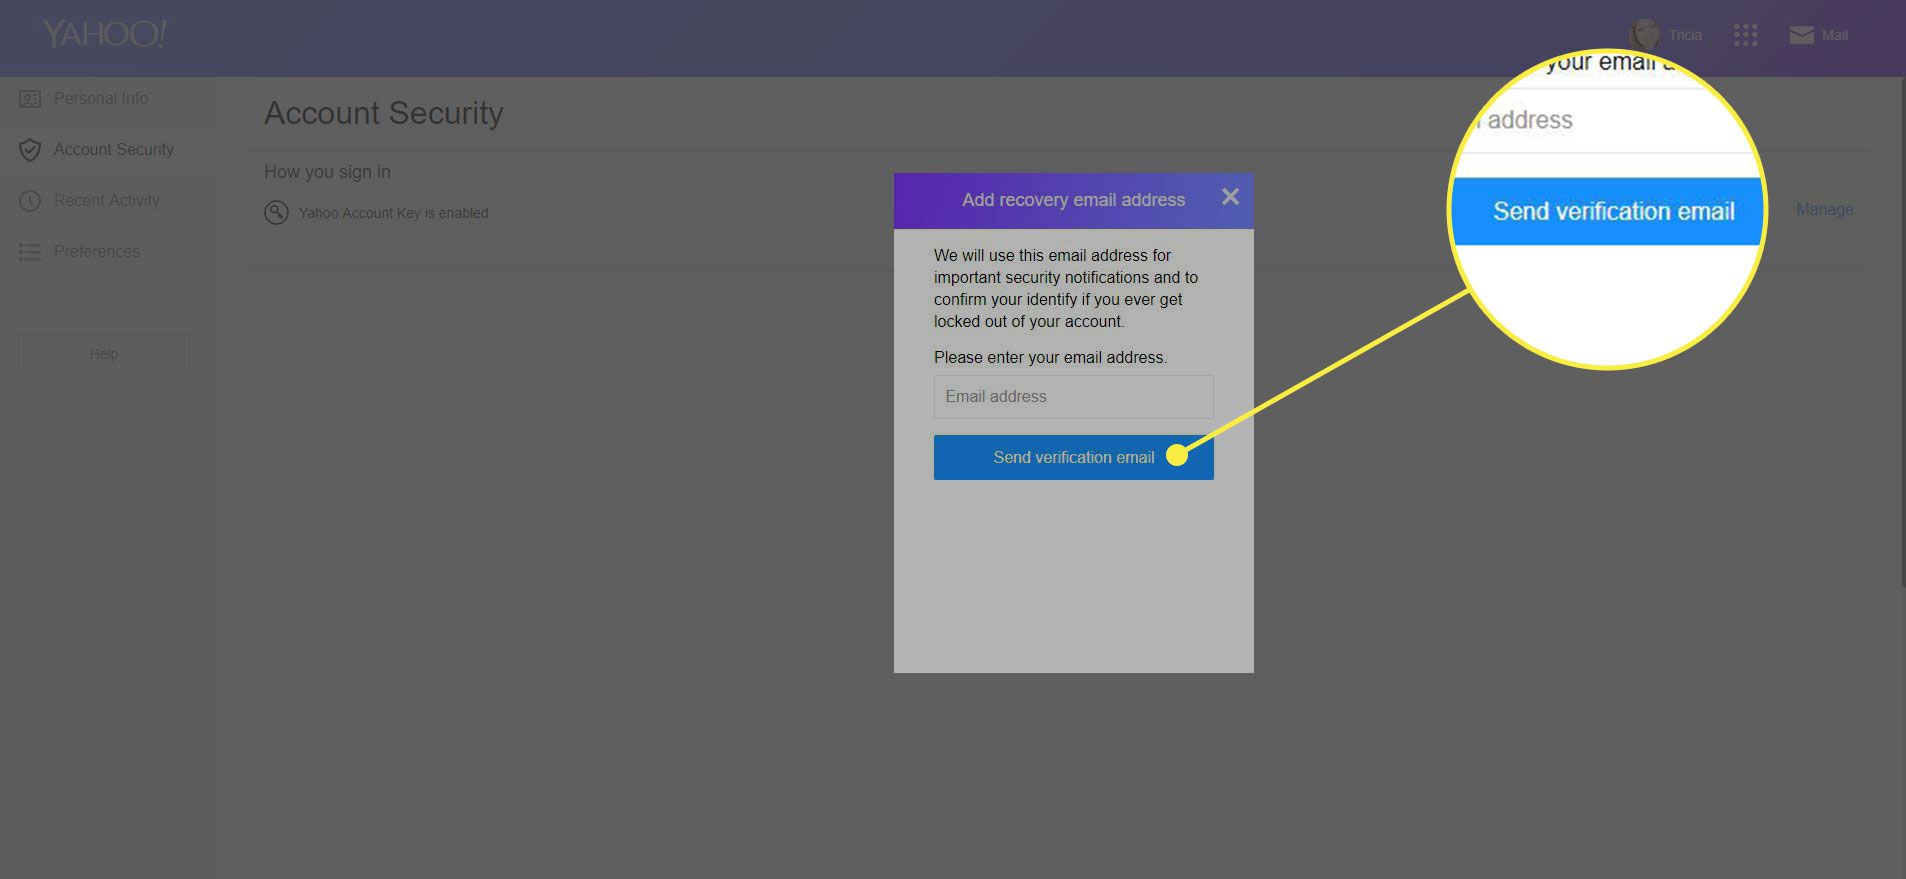 Знімок екрана екрана безпеки облікового запису Yahoo з "Надіслати електронний лист із підтвердженням" кнопка виділена